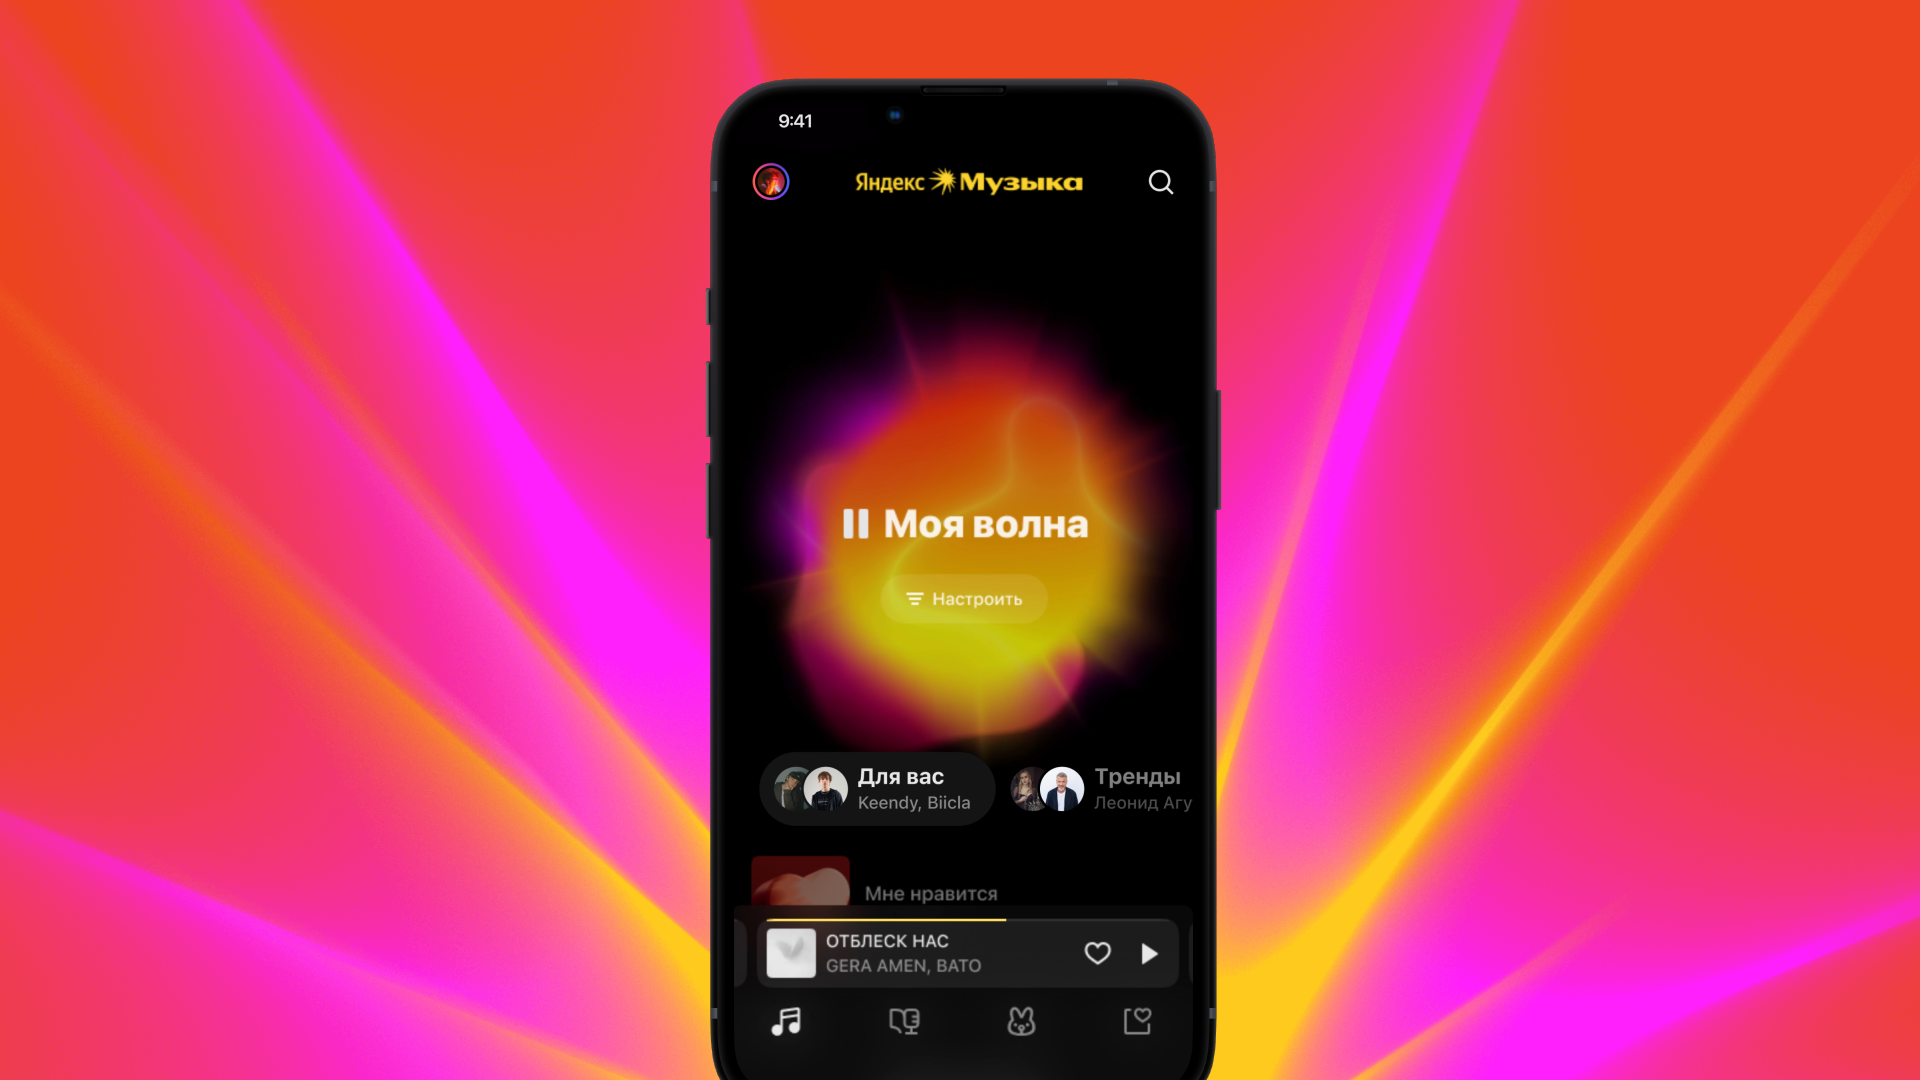 Яндекс Музыка продолжает персонализировать сервис: теперь  дизайн Моей волны подстраивается под музыкальные предпочтения казахстанцев